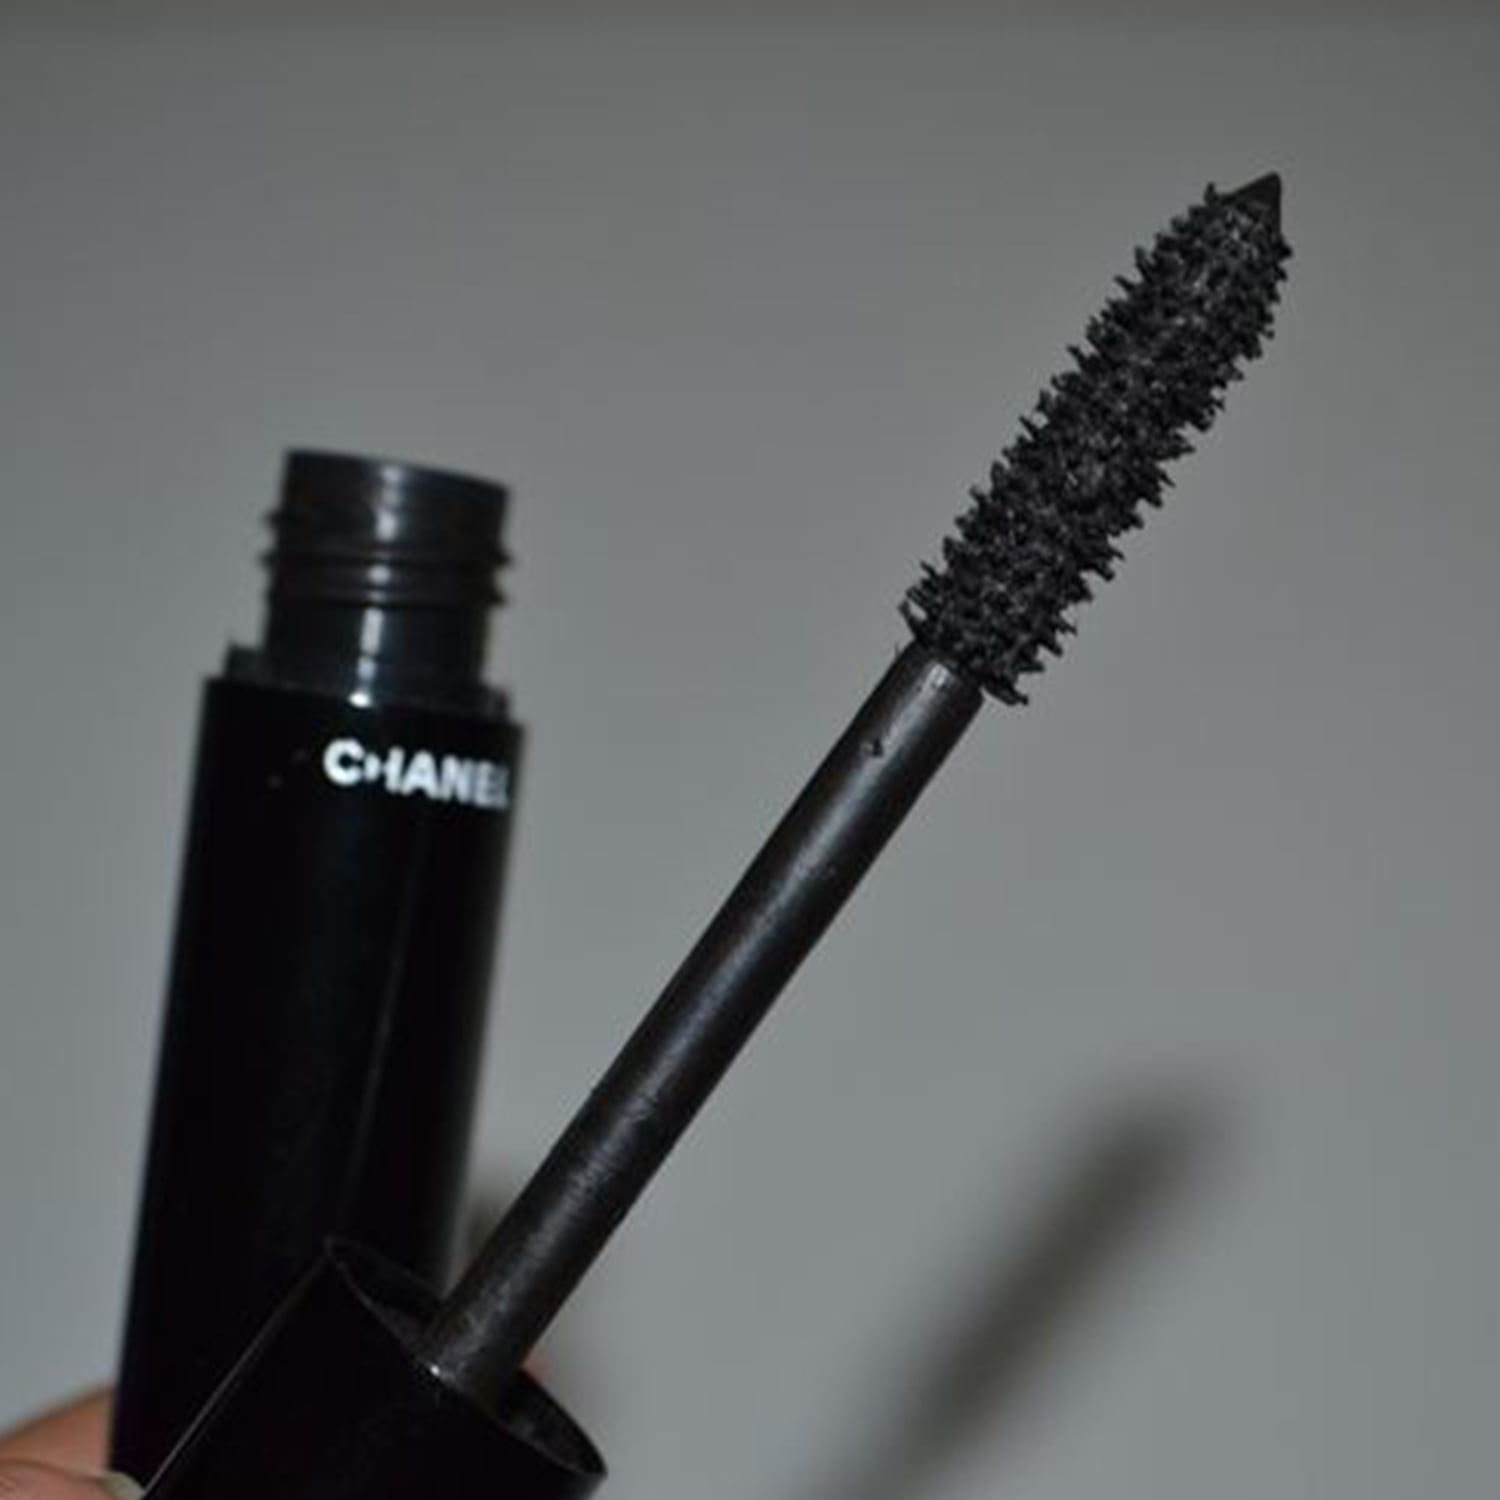 Le Volume De Chanel Mascara - # 10 Noir - 6g/0.21oz 